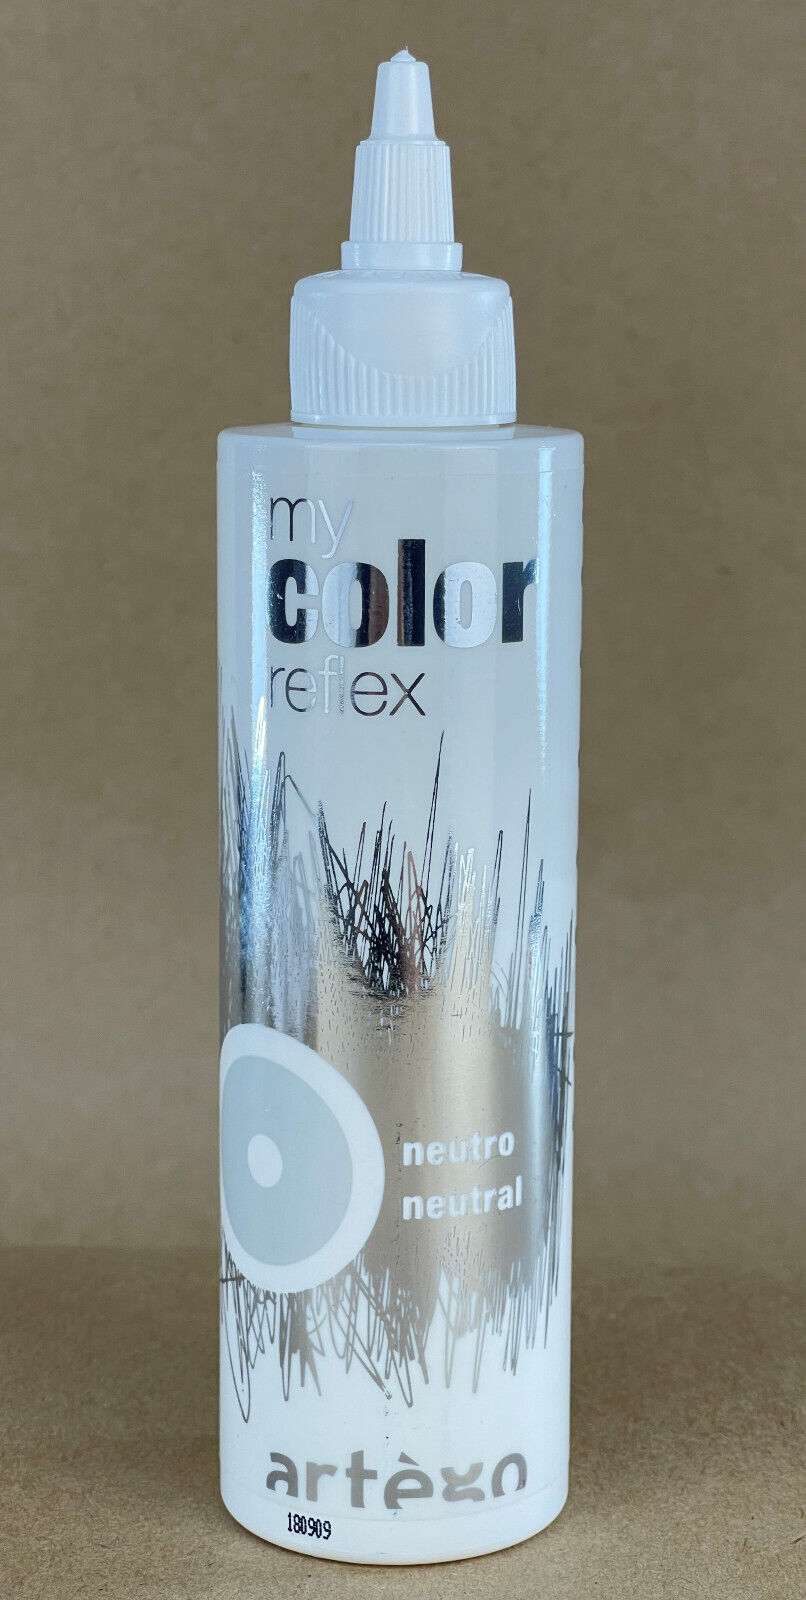 my color reflex artego szampon